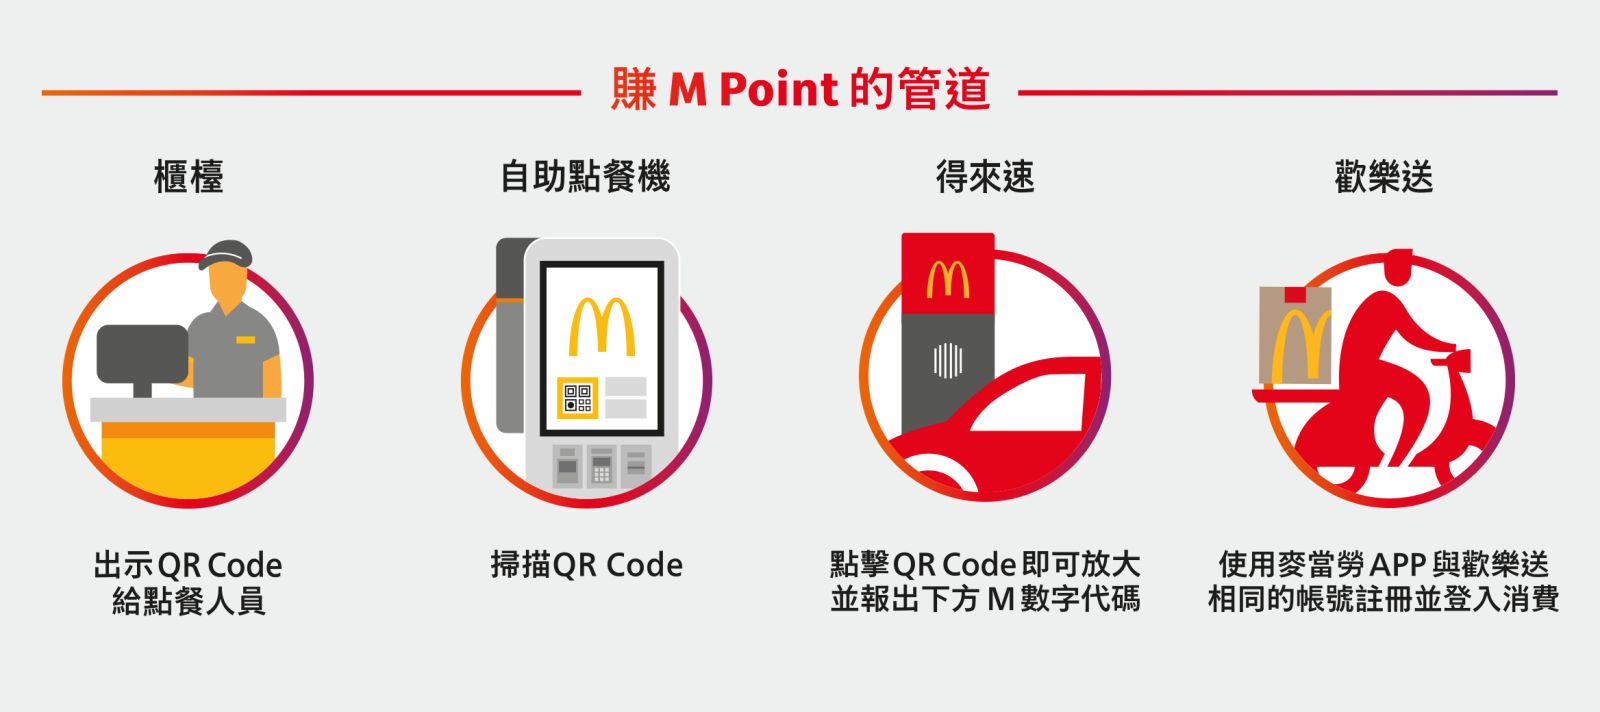 麥當勞全球APP3：賺M Point的管道